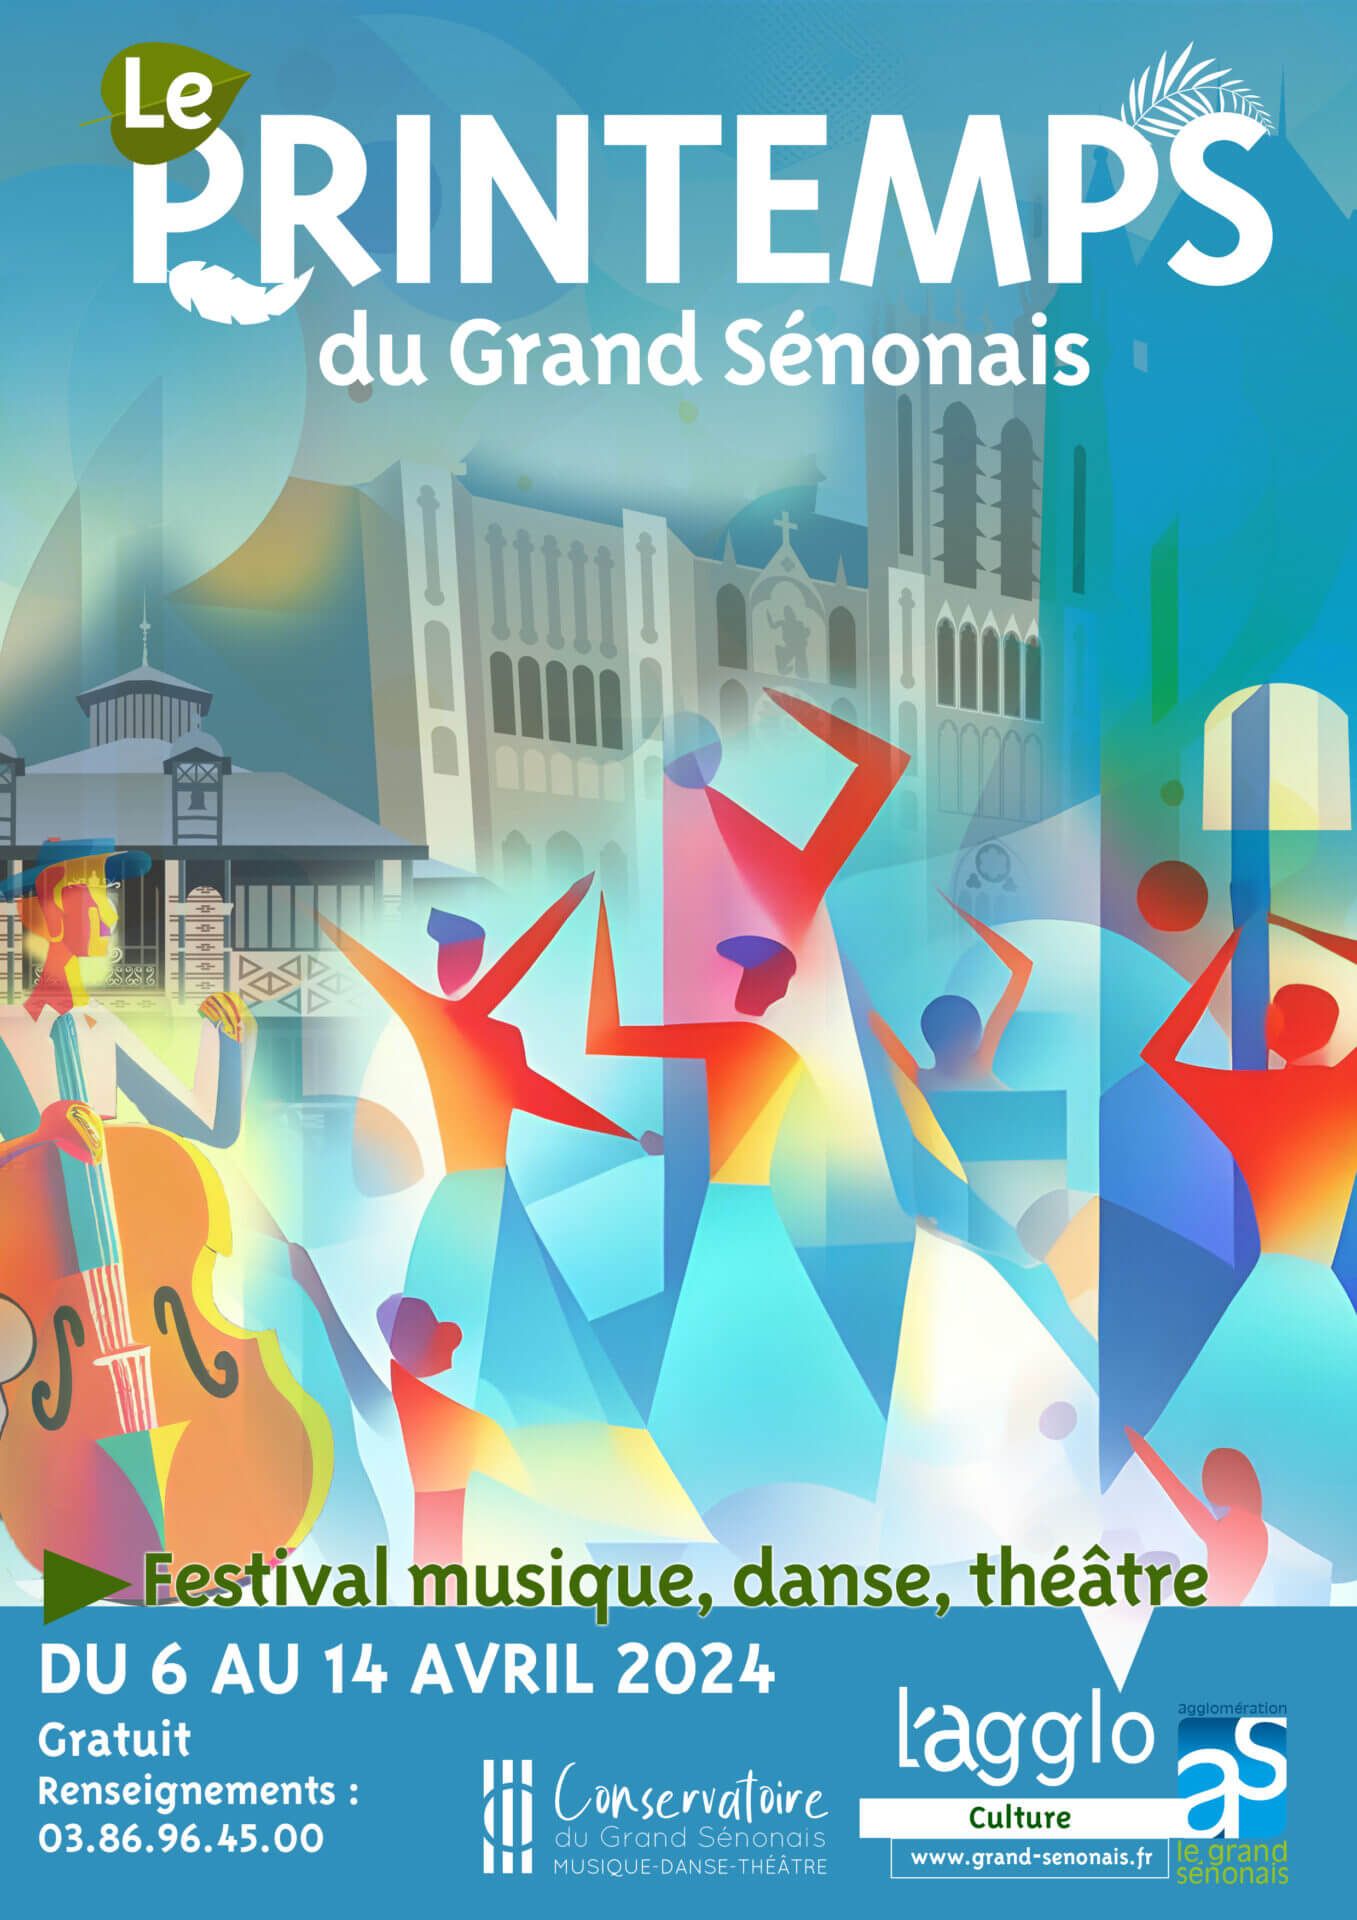 
Du 6 au 14 avril 2024, le Conservatoire du Grand Sénonais organise son premier festival de musiq...